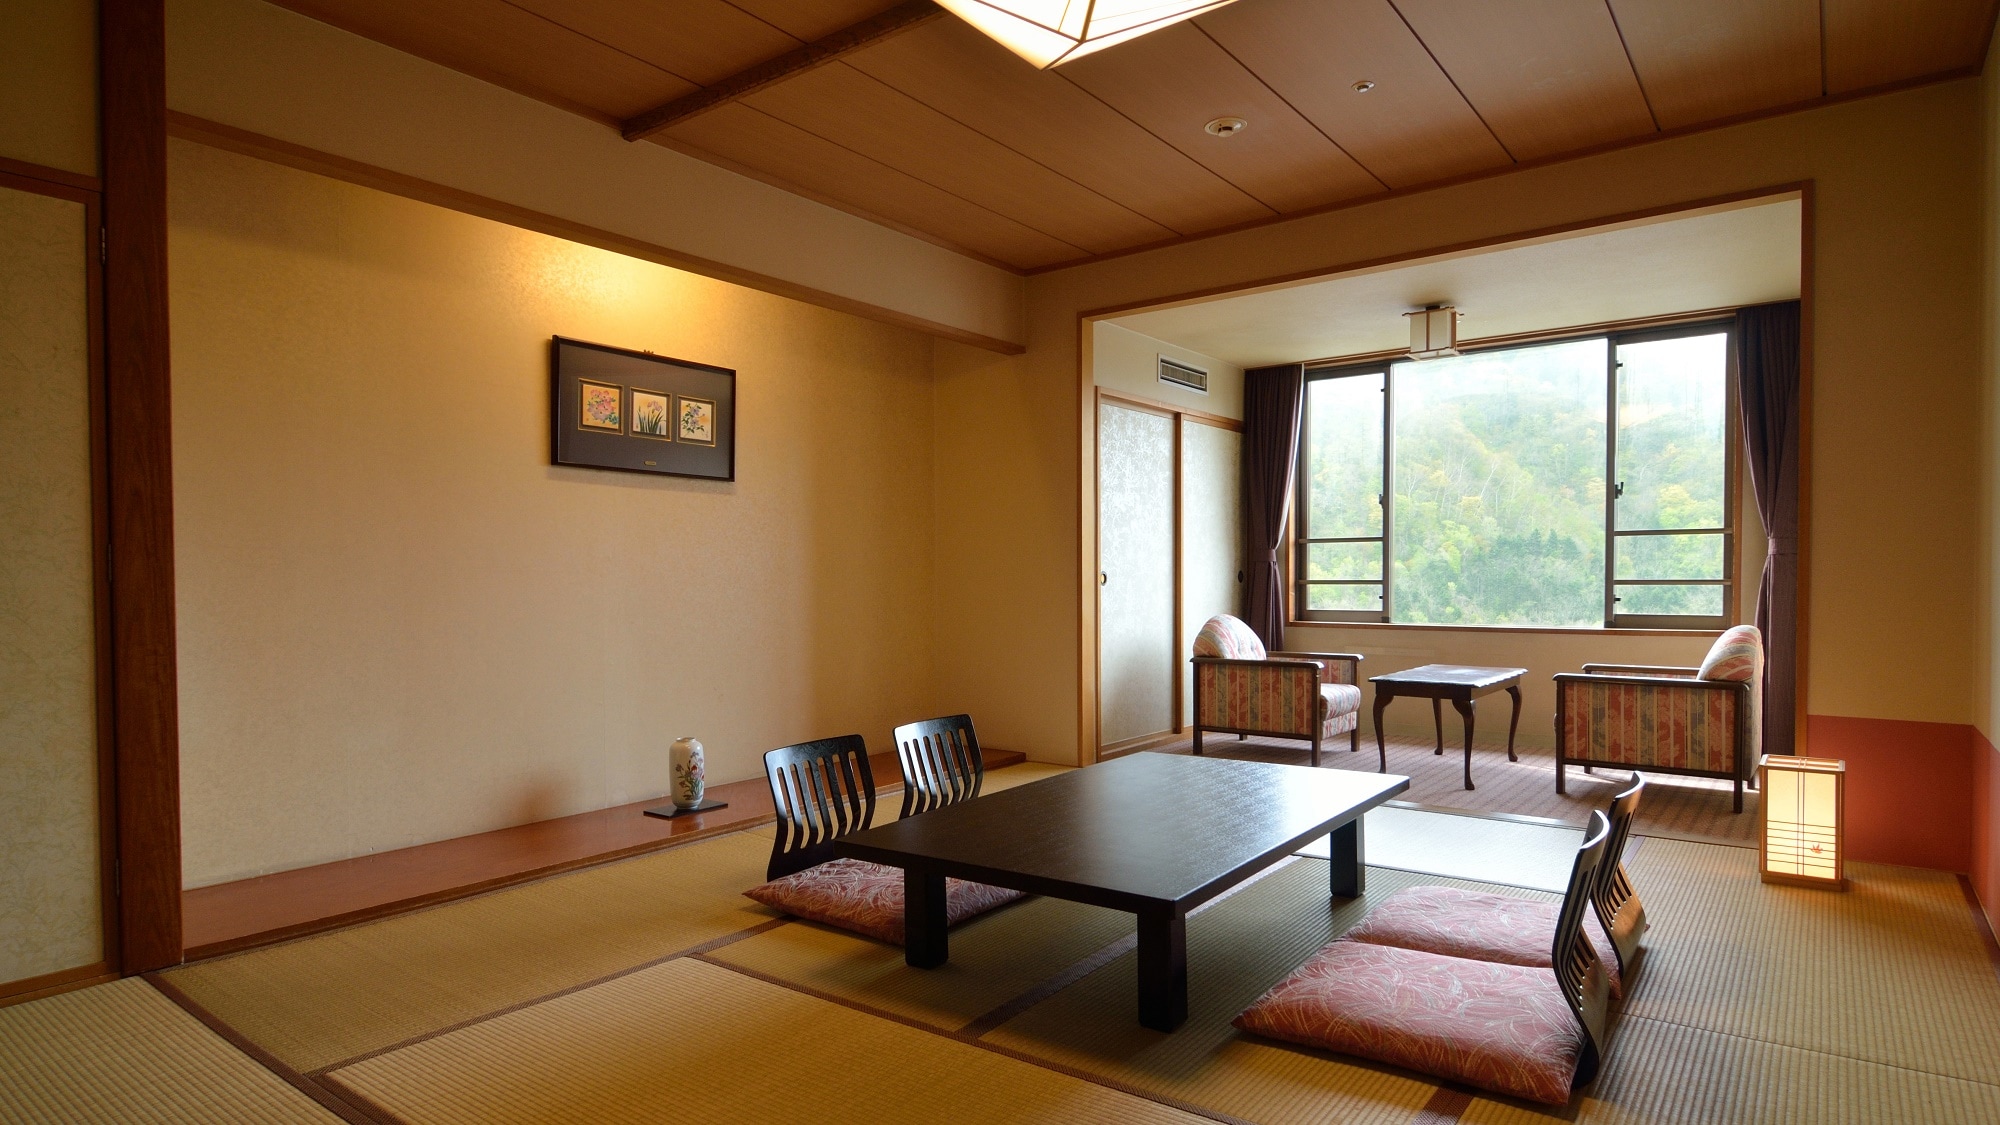 【日式房間10張榻榻米】陽台是靠窗的2張榻榻米左右。在充滿開放感的房間裡享受輕鬆的度假時光。